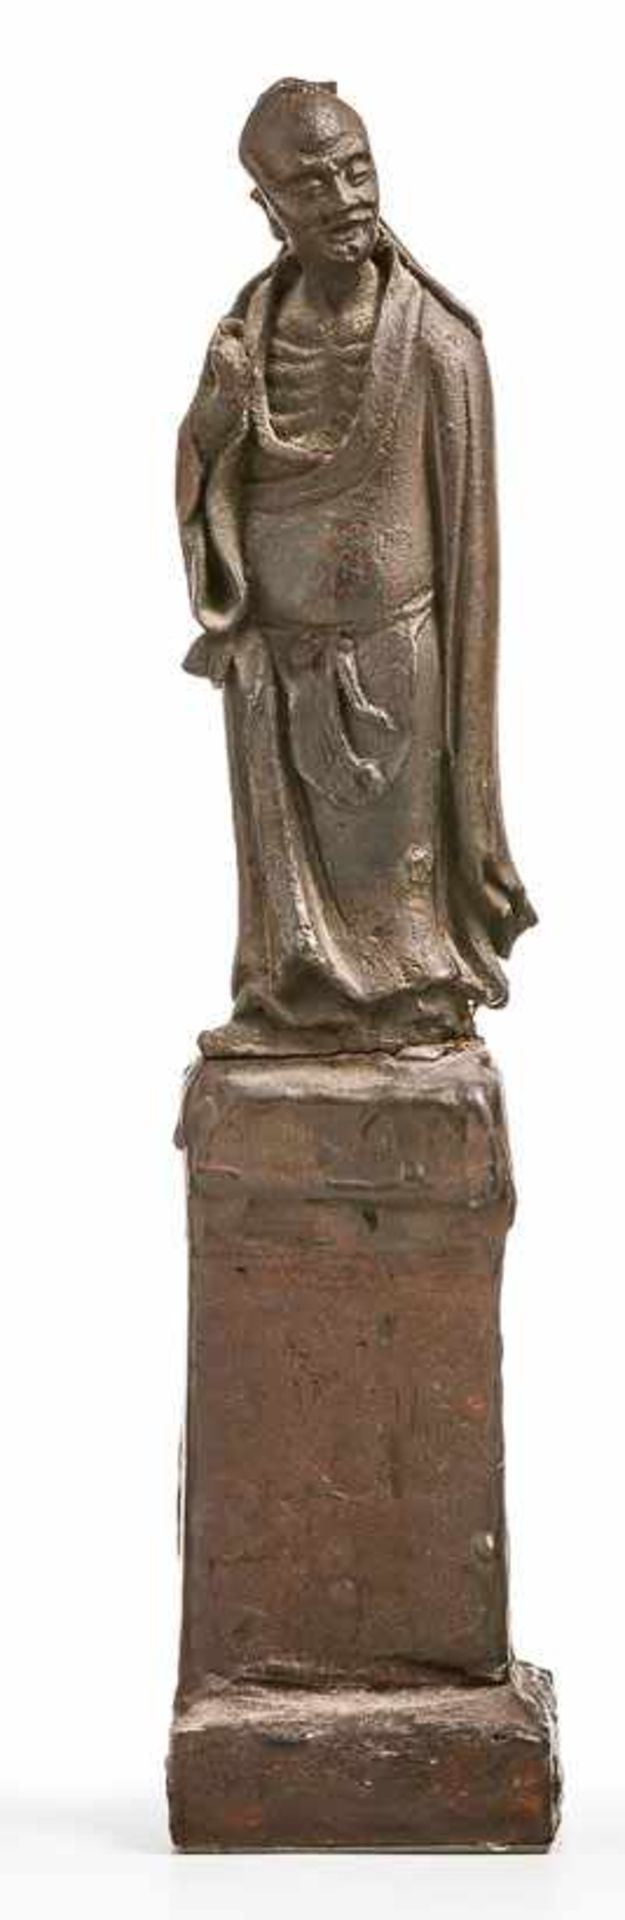 Stehender Sennin m. erhobener rechter HandChina, 17. Jh.Bronze, dunkel patiniert. H. 15,5 cm. Auf